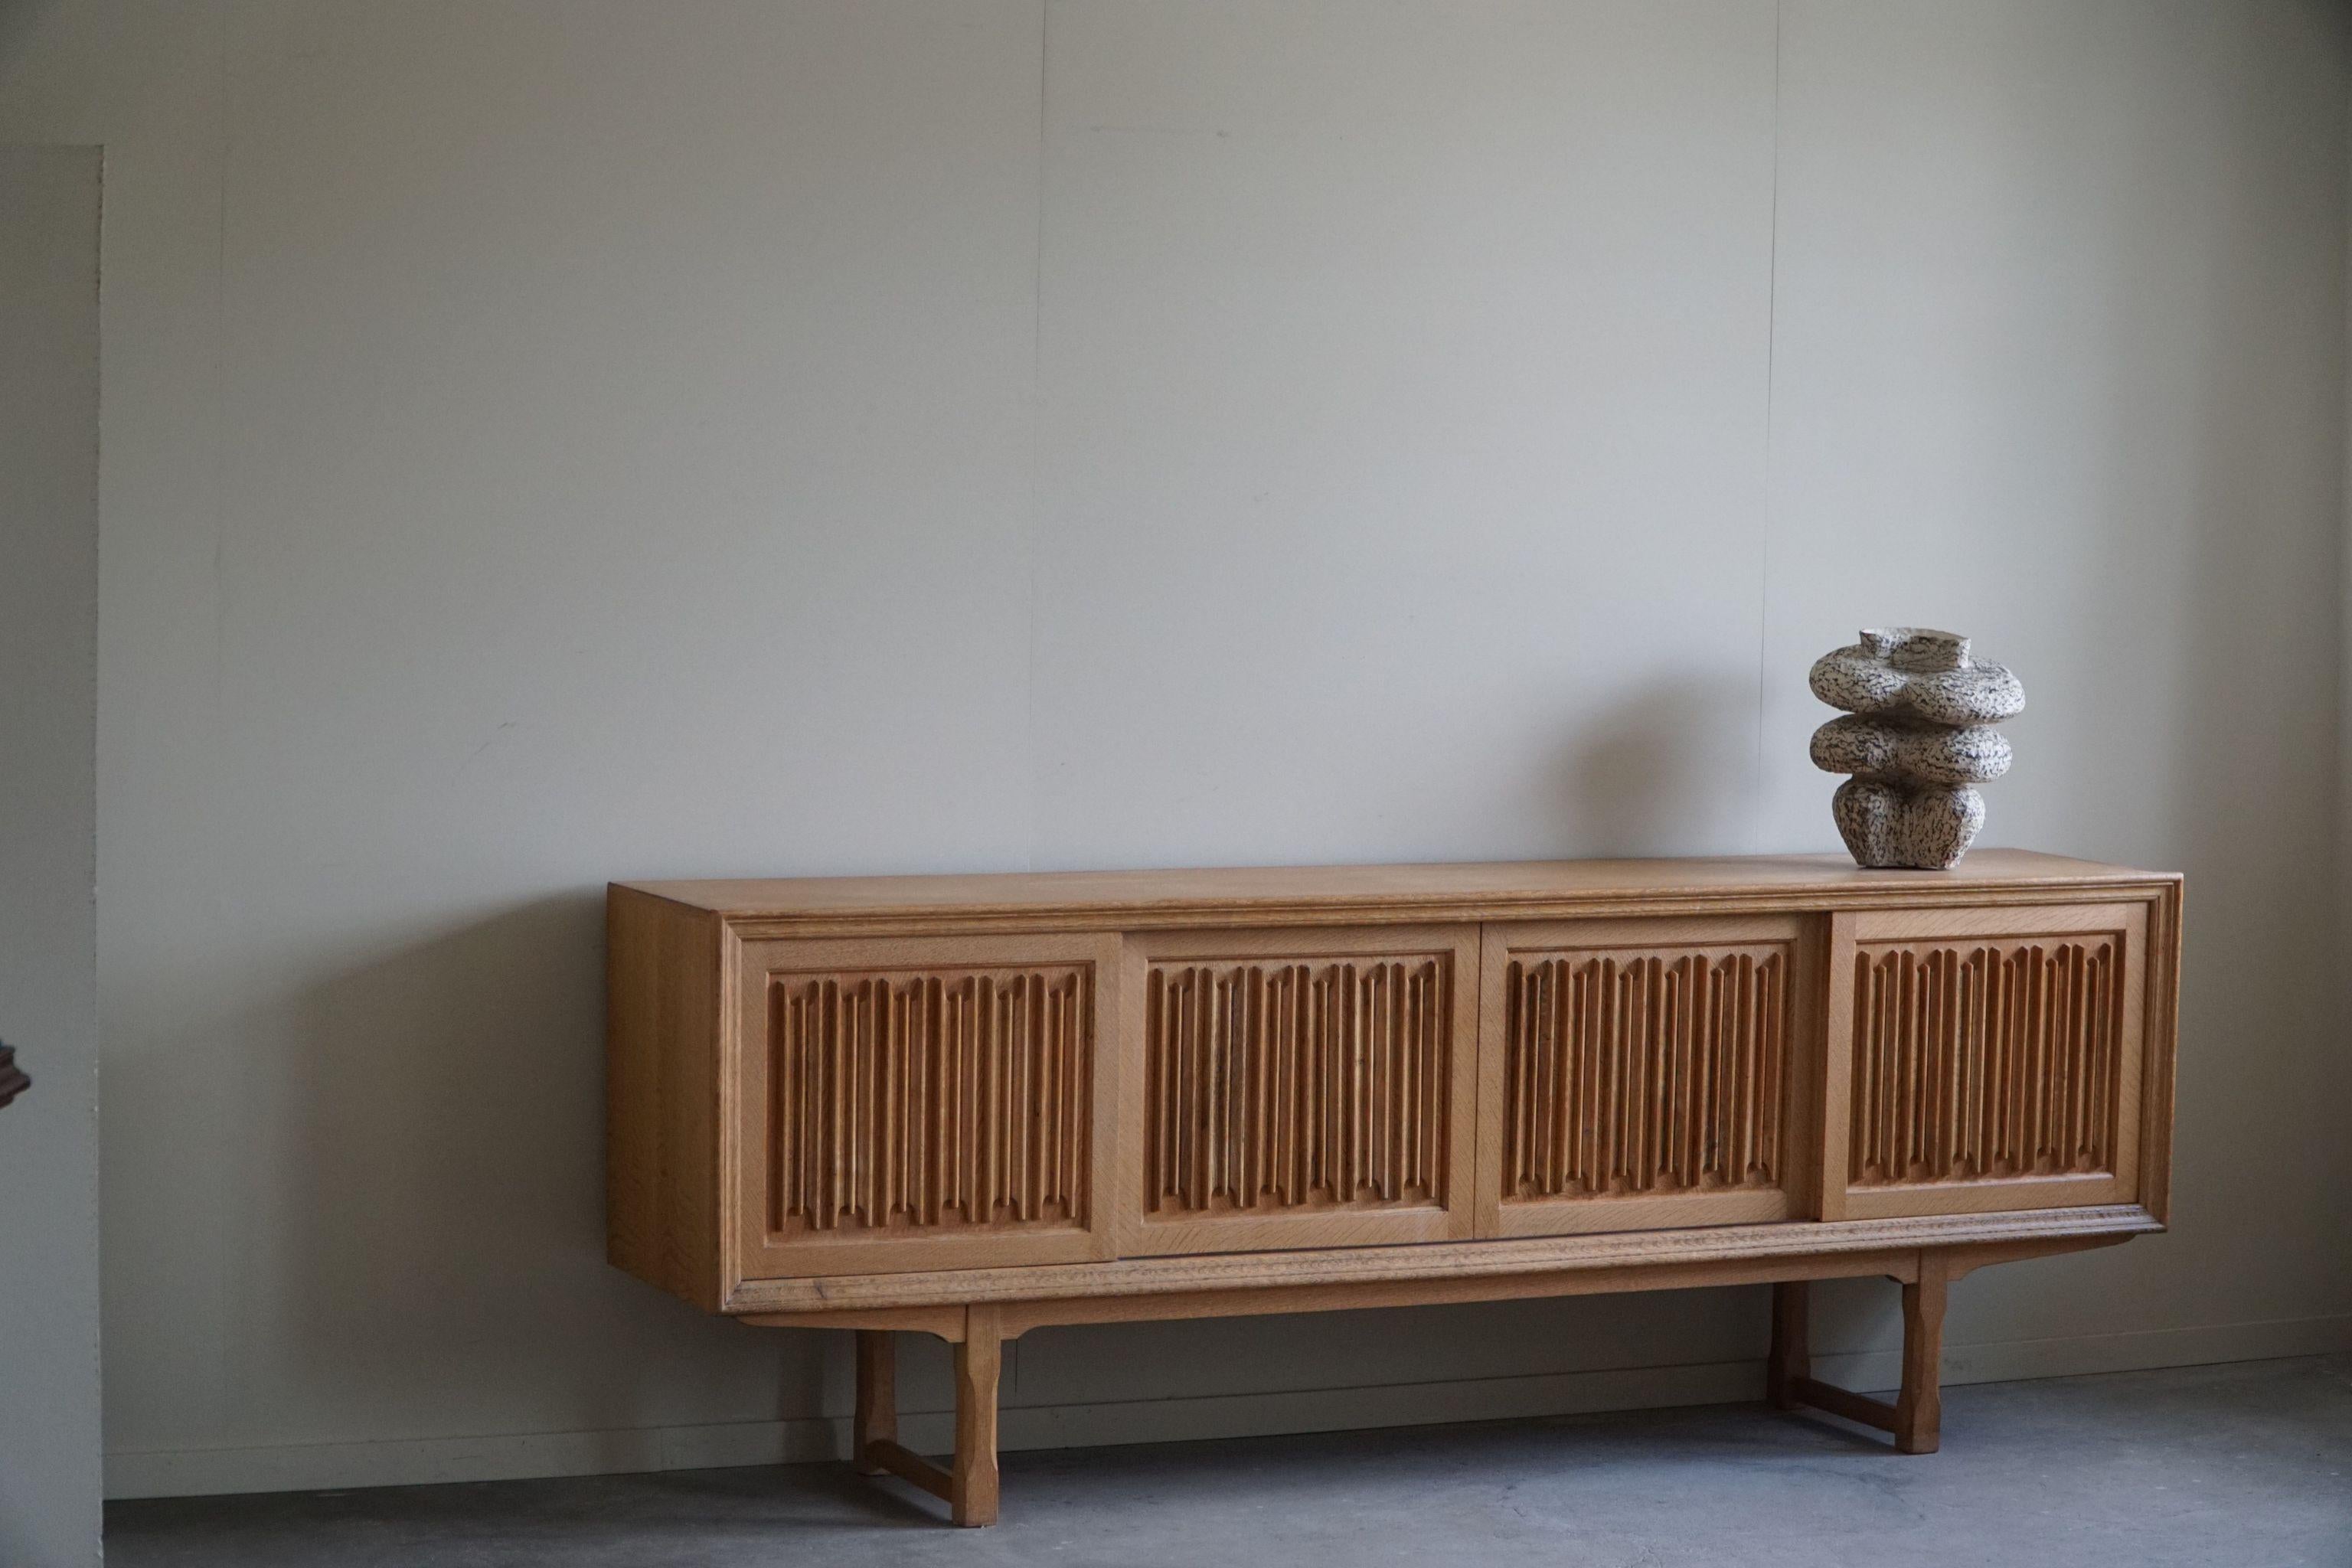 Sculptural Low Sideboard in Oak, Mid Century Modern, Danish Cabinetmaker, 1960s For Sale 7